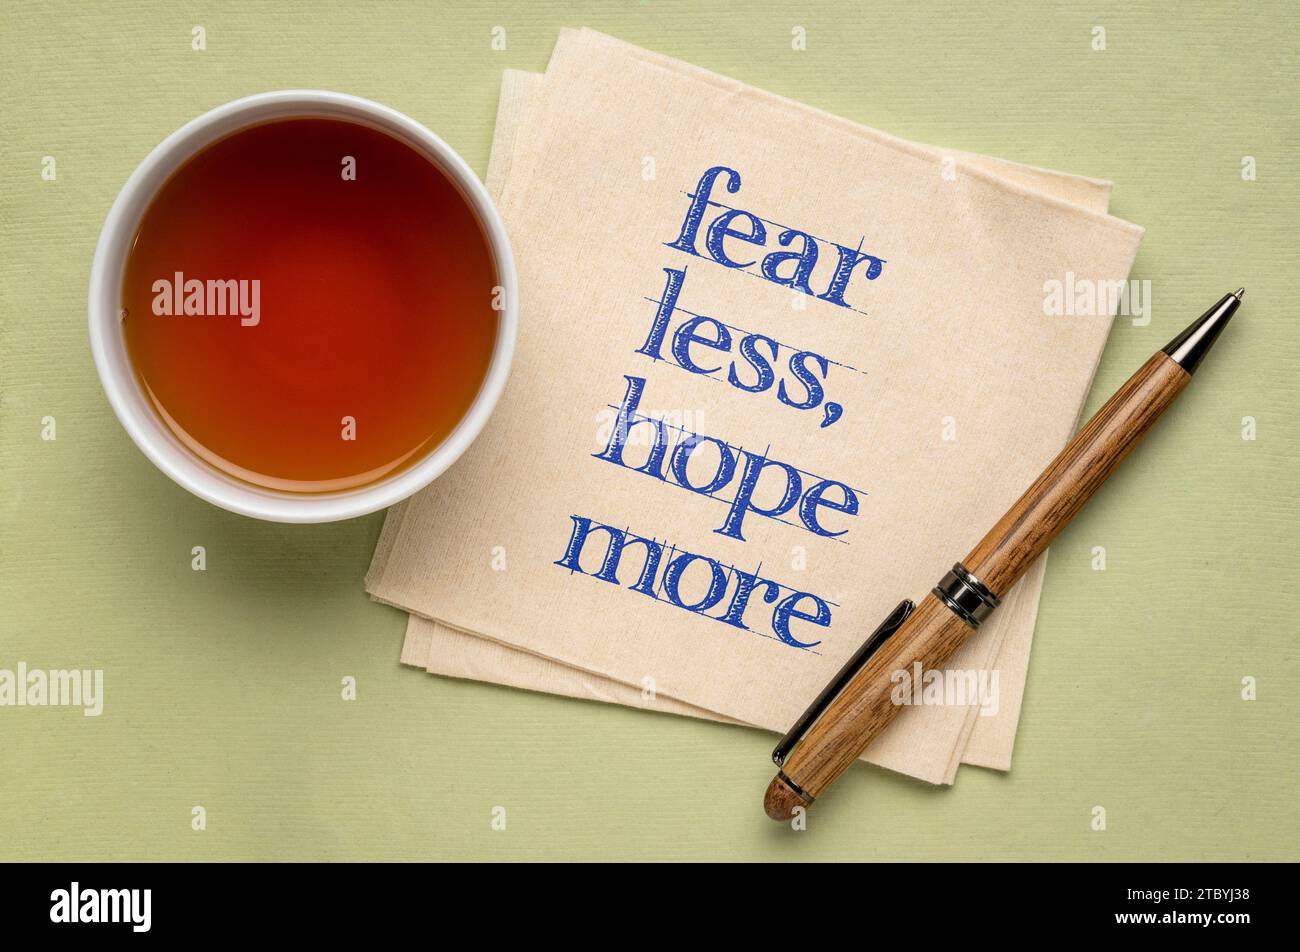 paura di meno, speranza di più - parole di saggezza su un tovagliolo con tè, stress e concetto di sviluppo personale Foto Stock